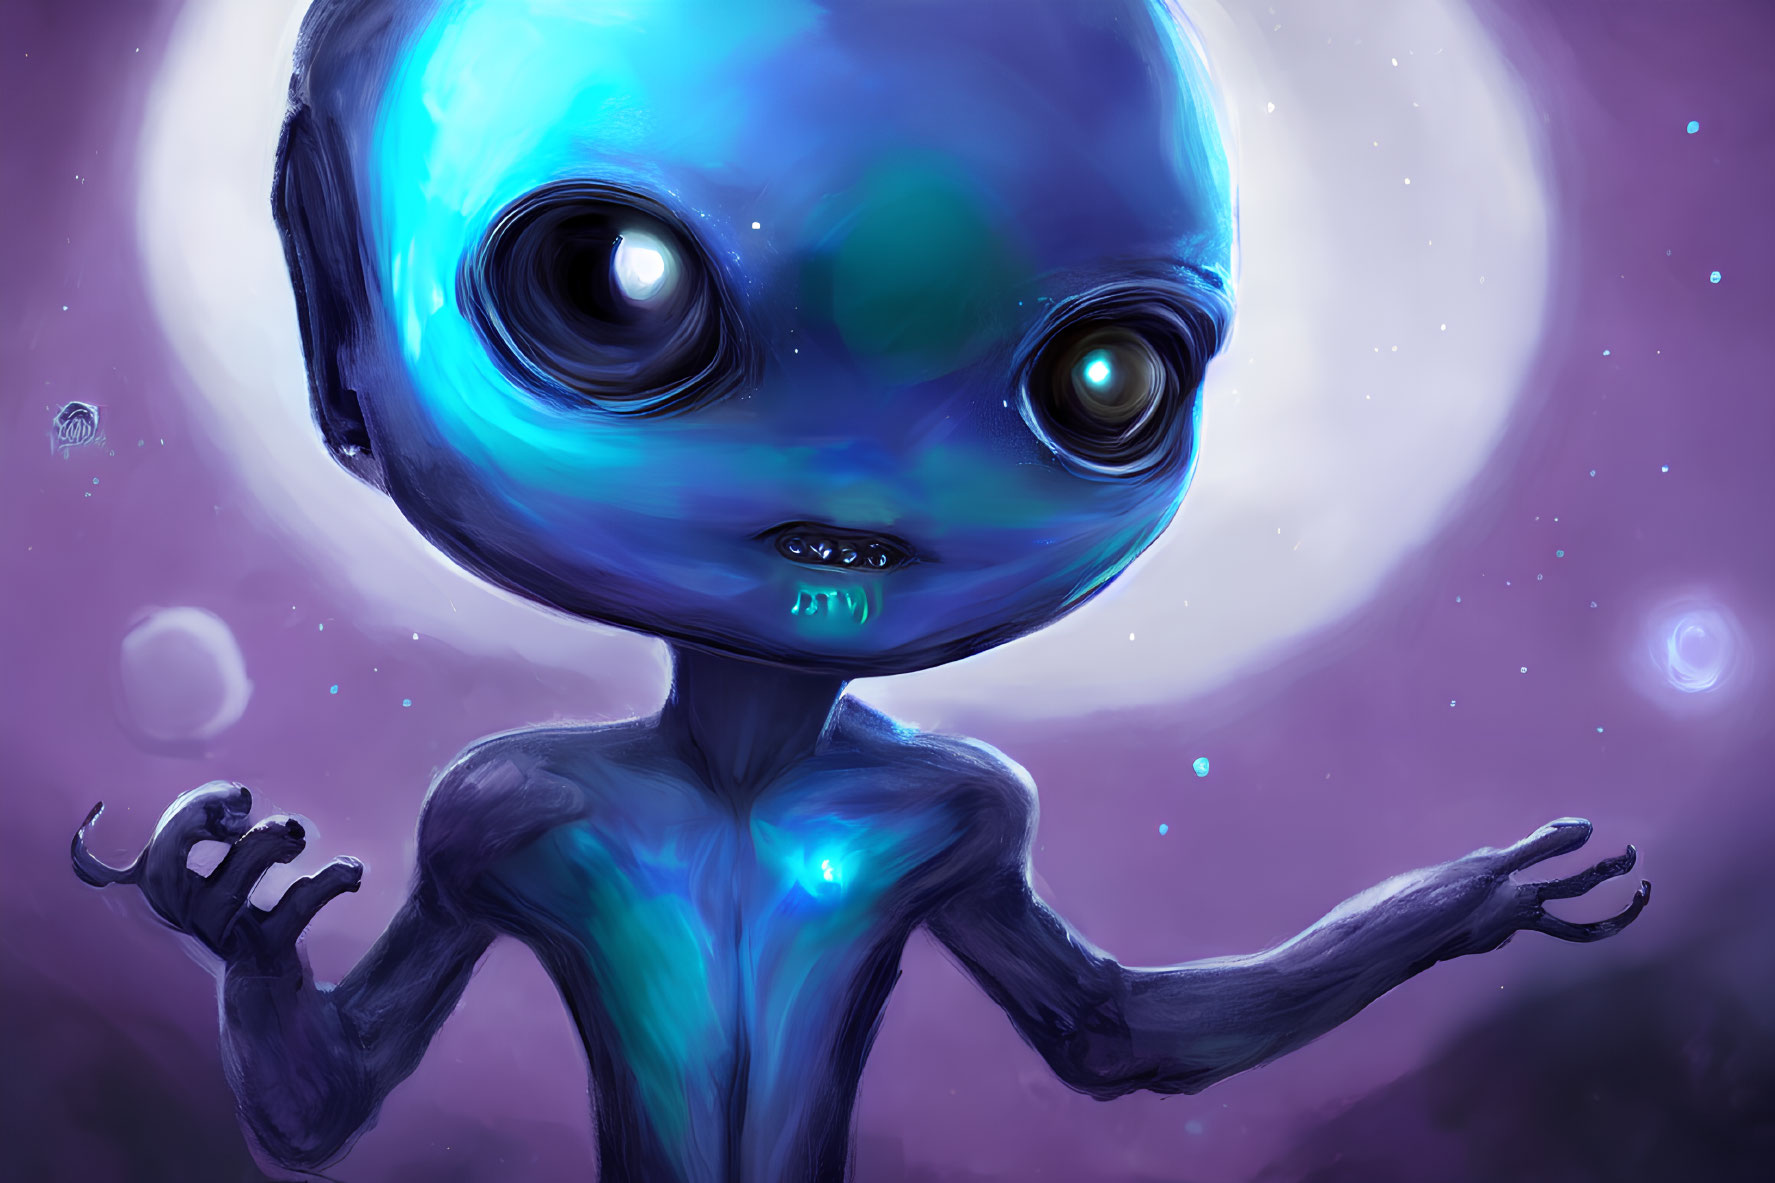 Blue alien with large eyes in cosmic scene.